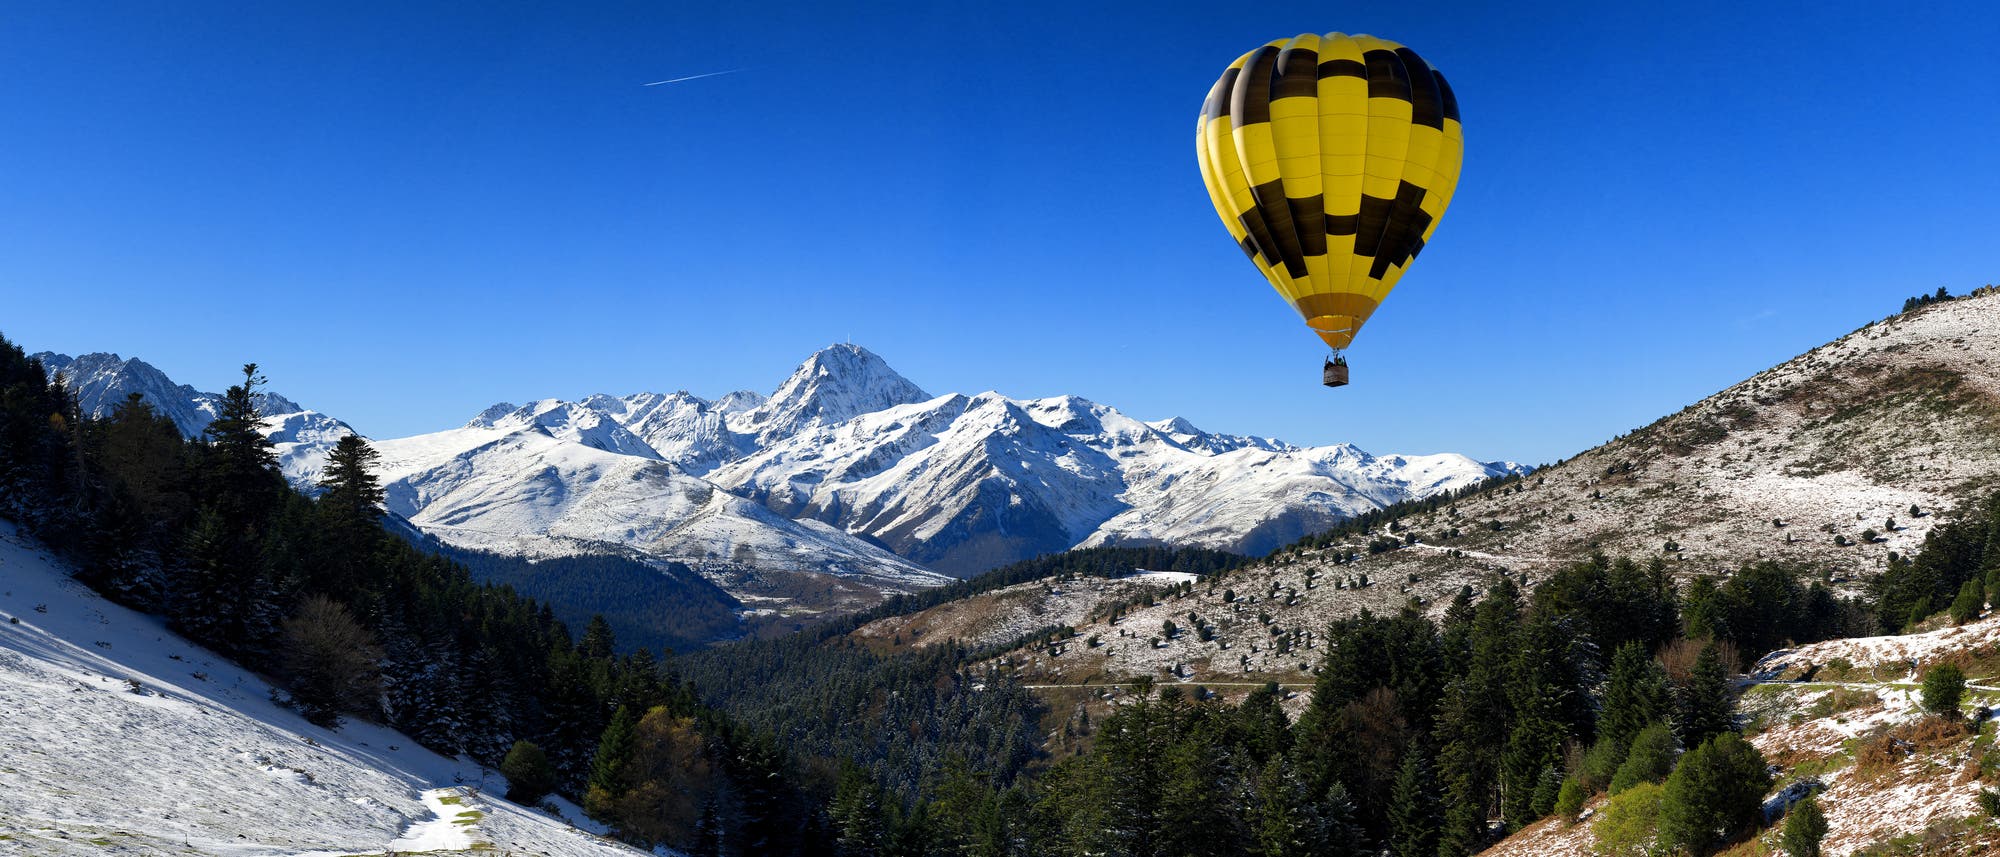 Der Pic du Midi de Bigorre ist ein 2877 Meter hoher Berg in den französischen Pyrenäen.